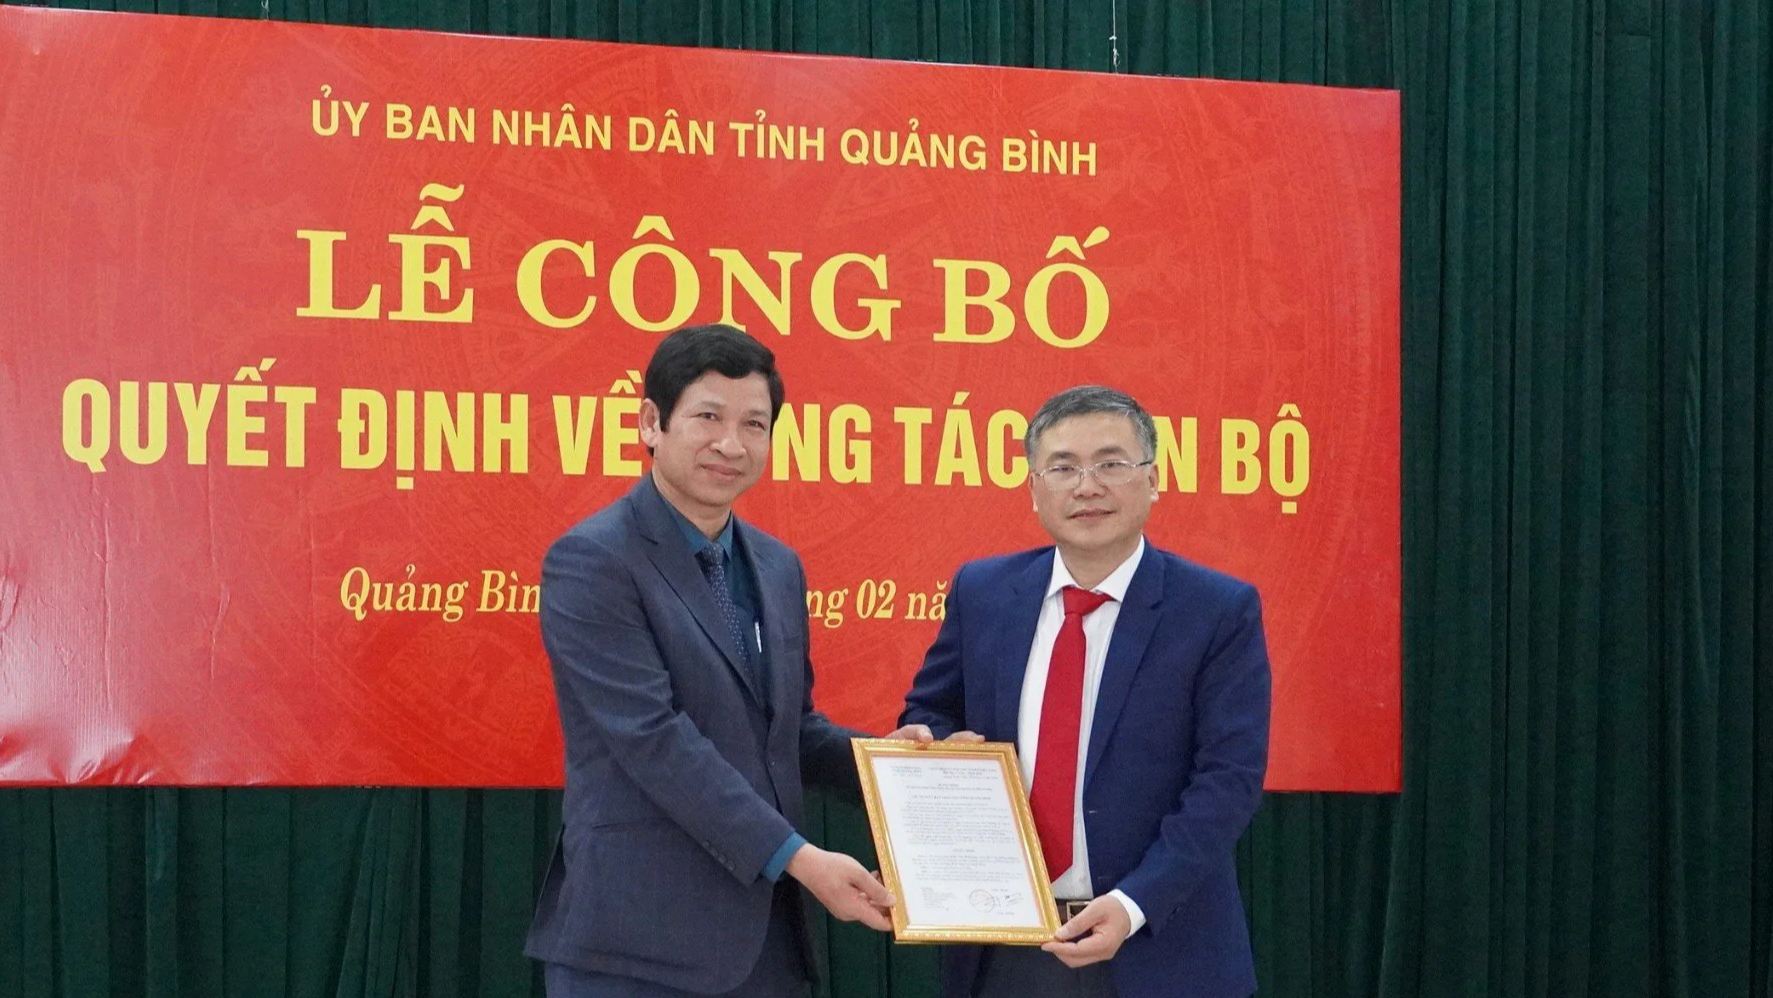 Nhân sự ở Quảng Bình: Liên tiếp bổ nhiệm nhiều lãnh đạo, cán bộ chủ chốt- Ảnh 1.